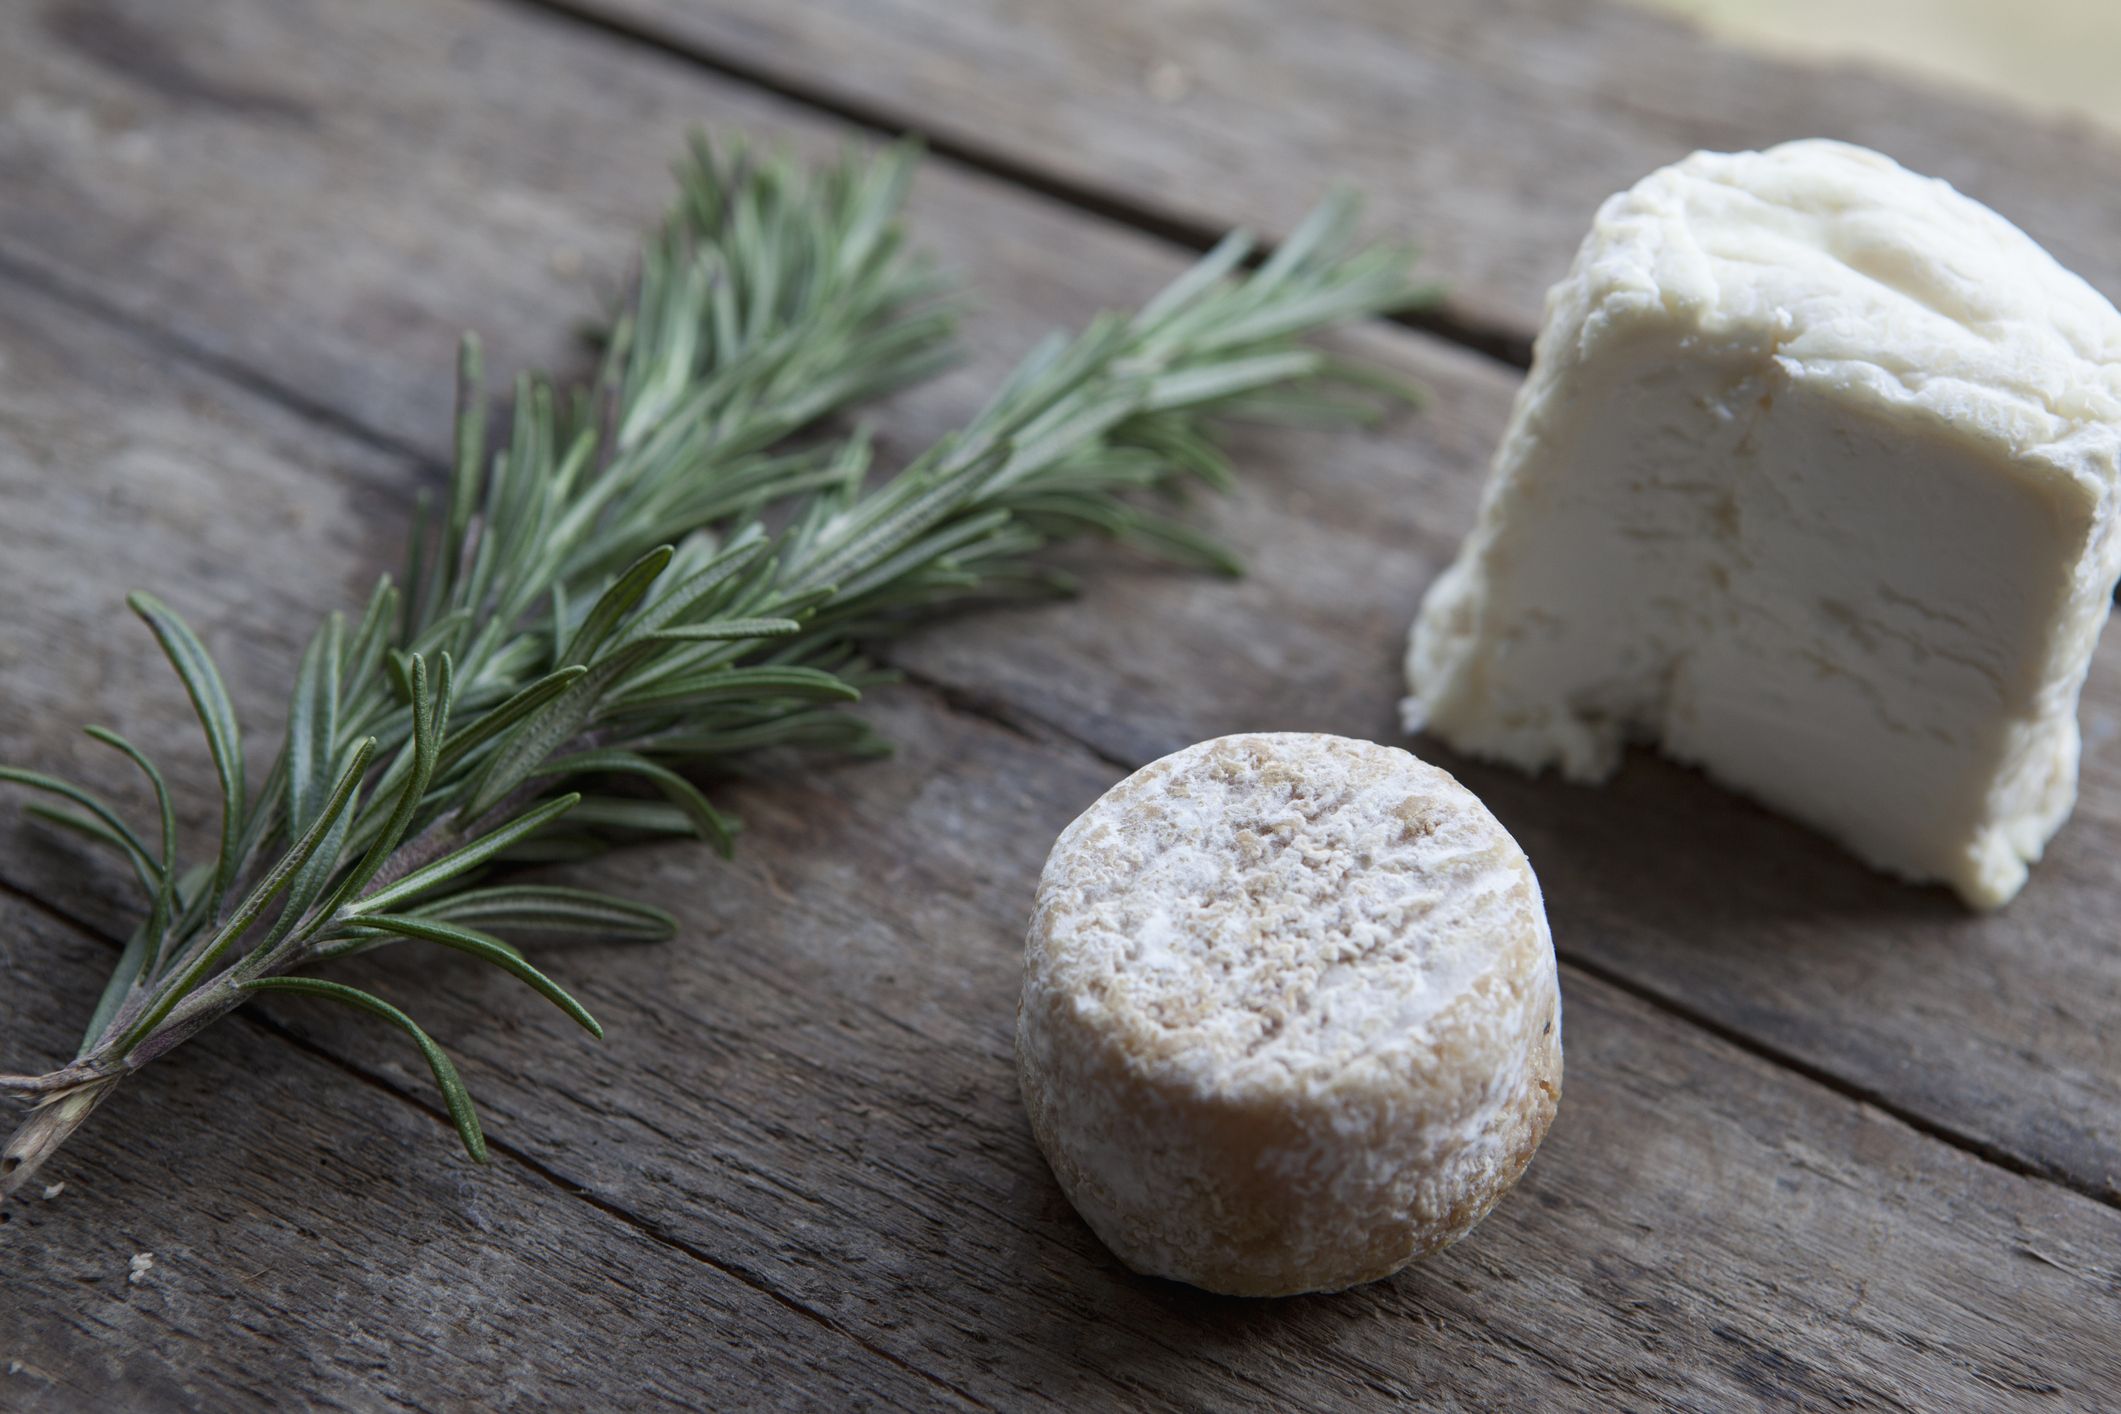 Las pocas calorías del queso fresco y por qué incluirlo en tu dieta 